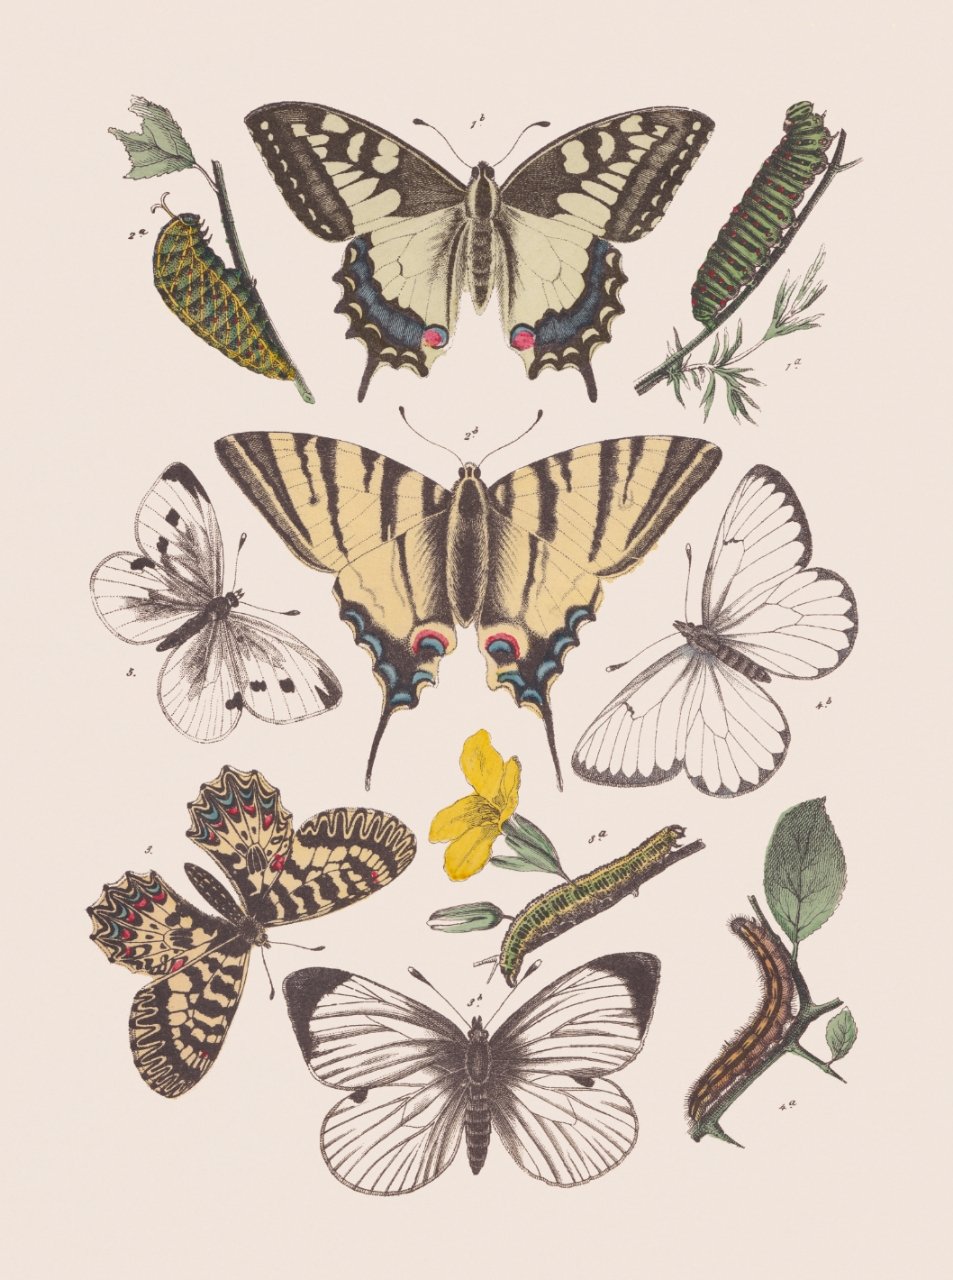 Бабочки 100 миллионов лет